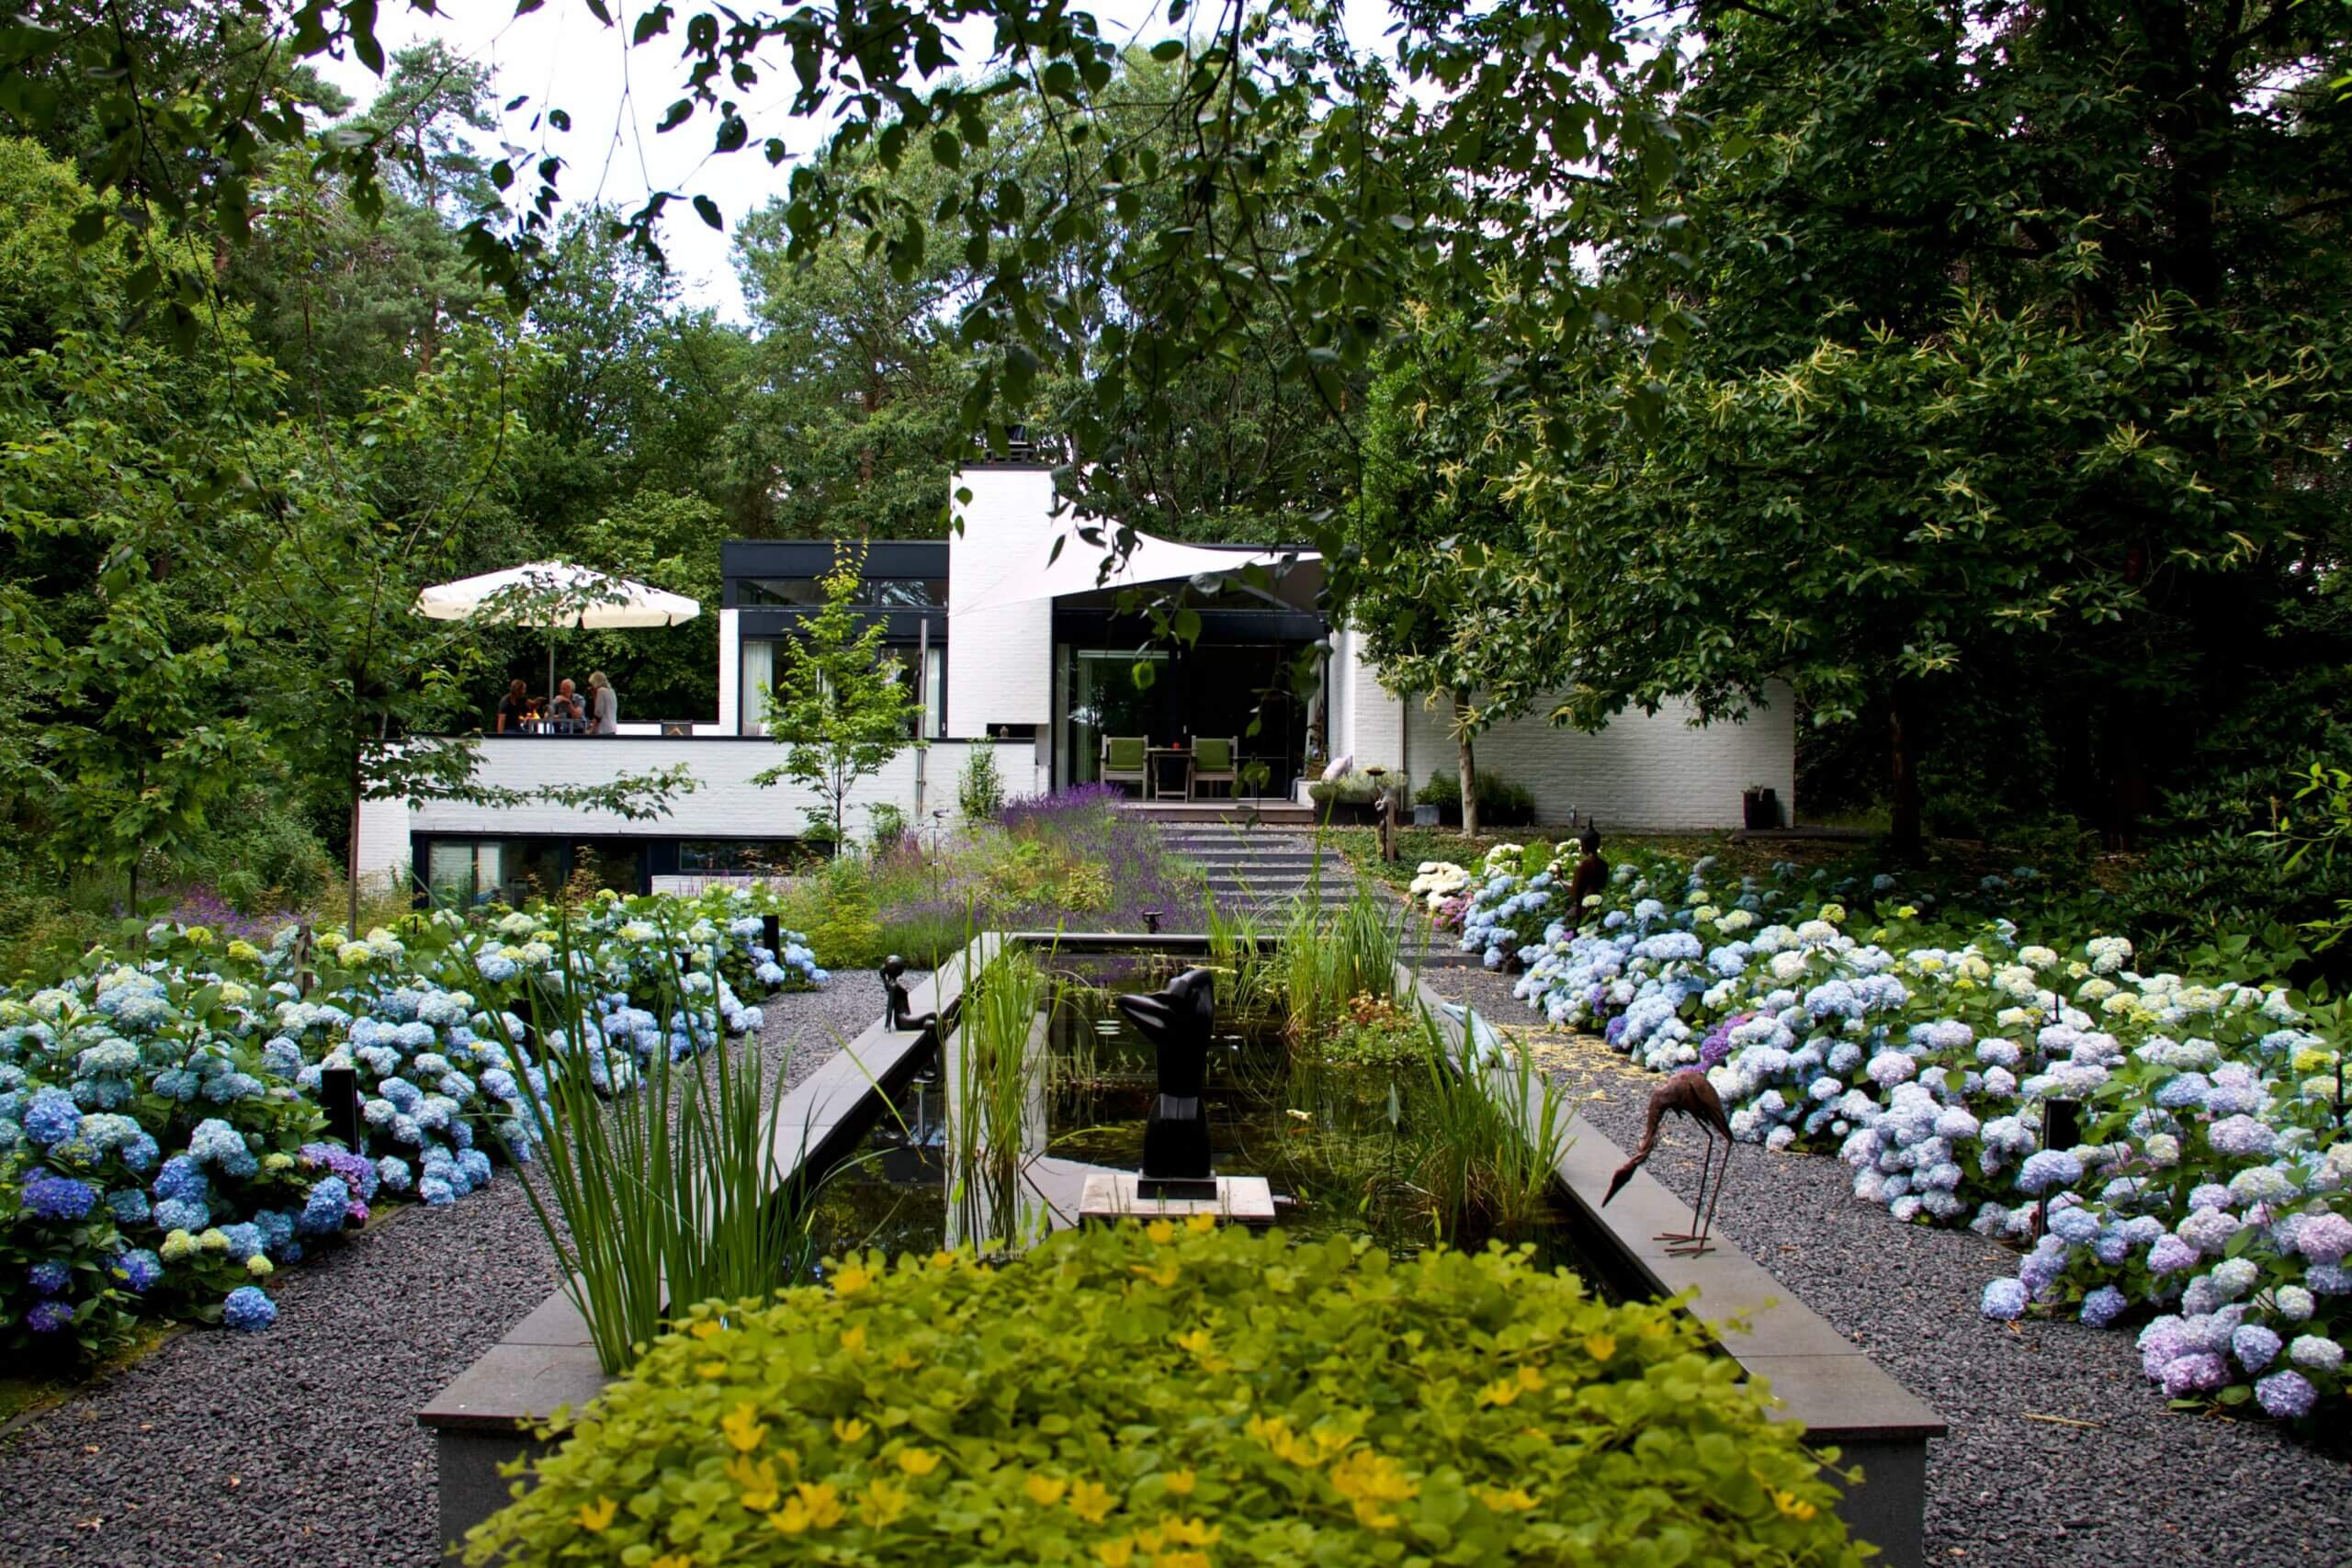 Bostuin met veel planten bij een moderne villa